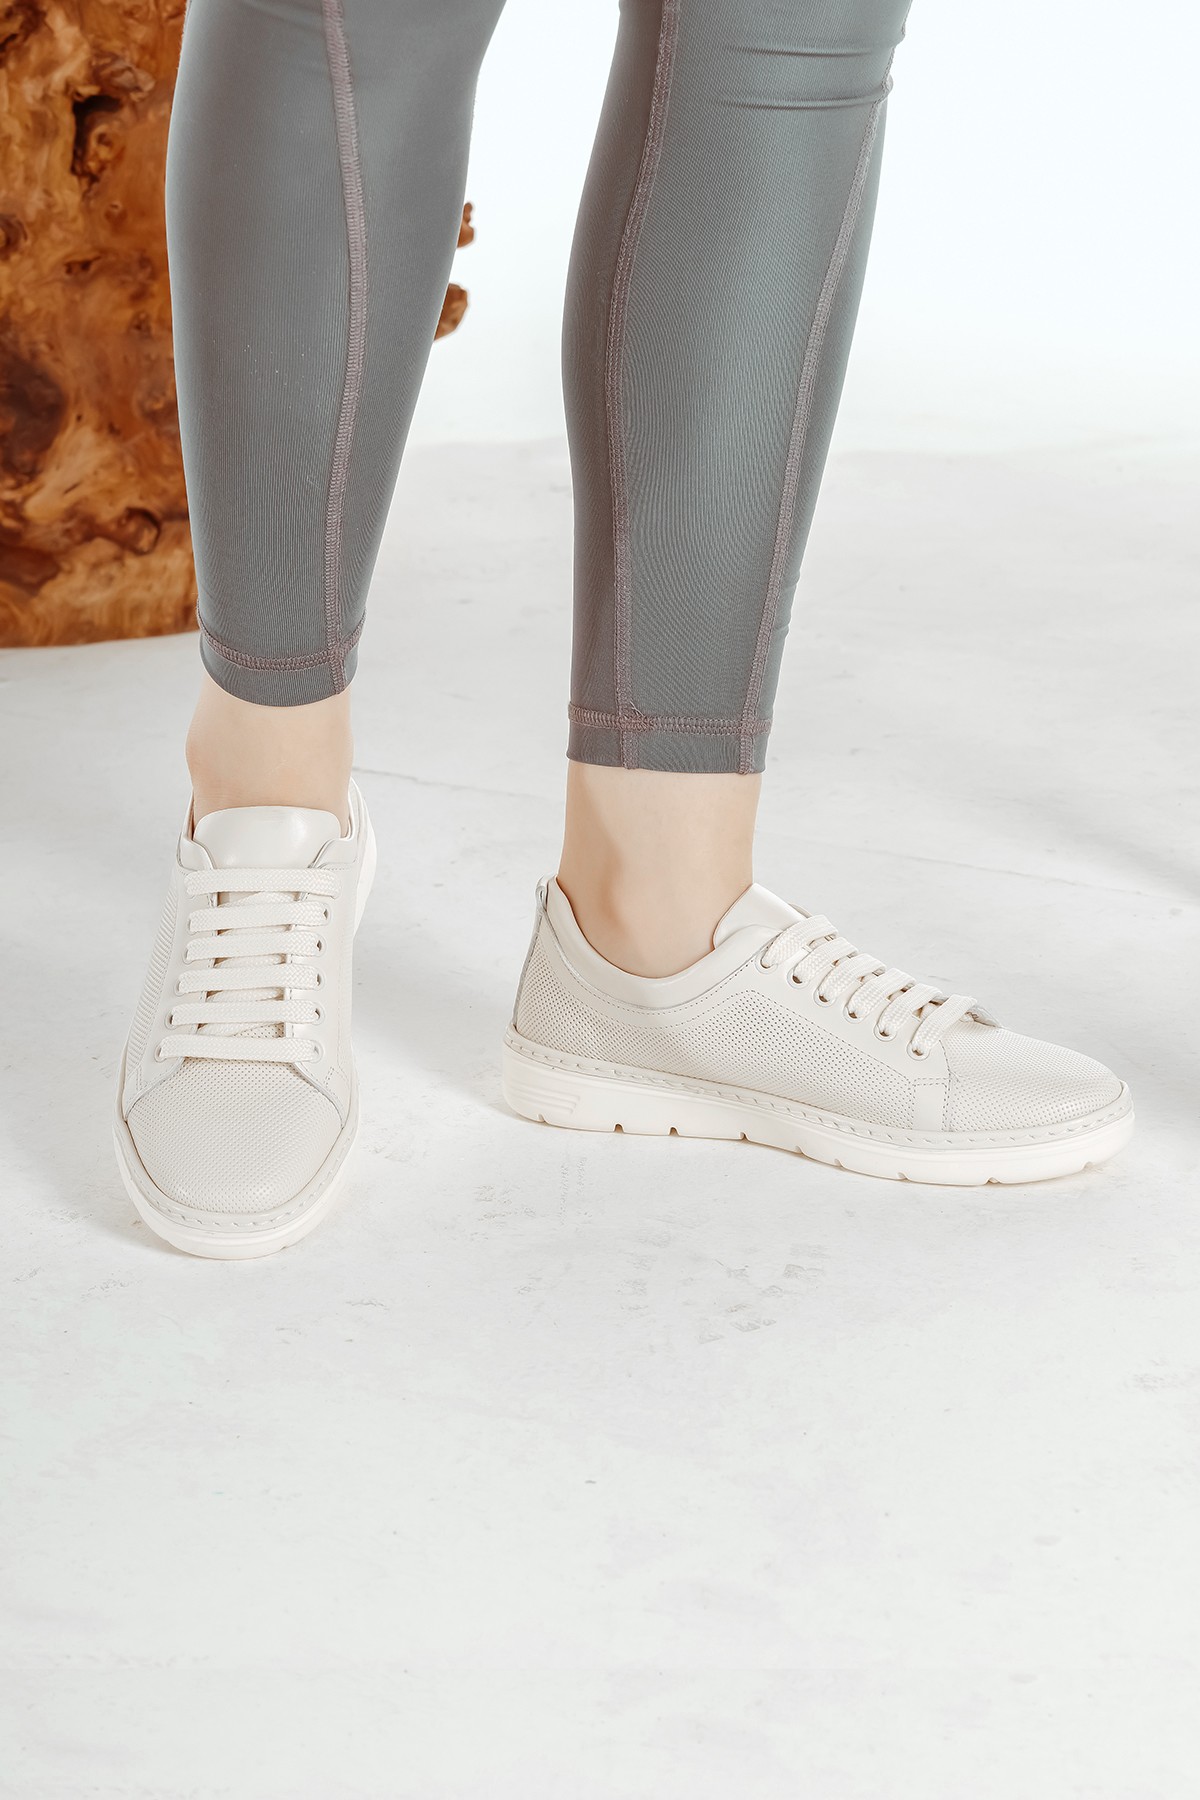 Cooliza Hakiki Deri Bağcıklı Eva Taban Hafif Rahat Kadın Günlük Casual Ayakkabı - Beyaz